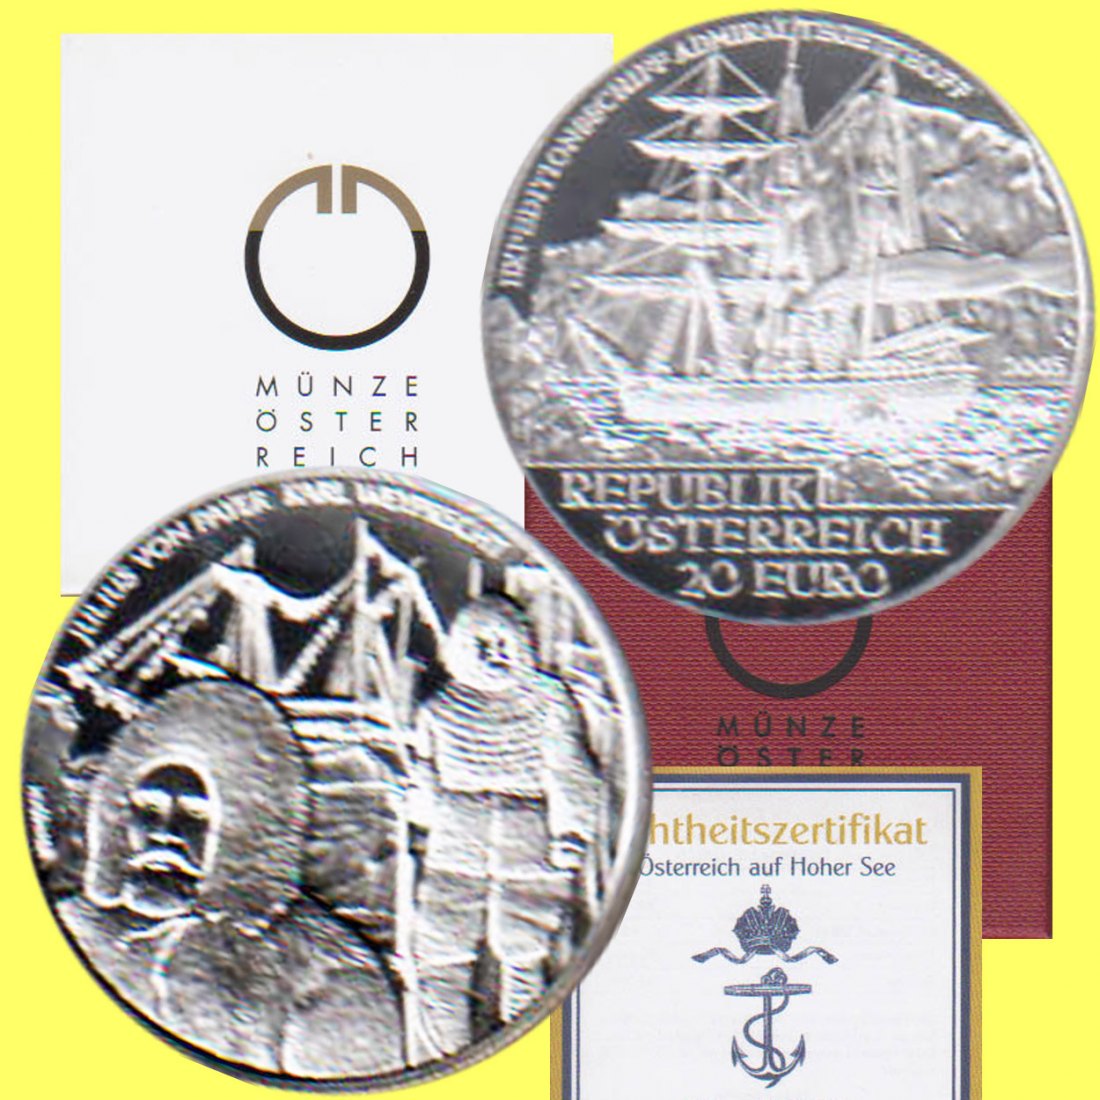  Offiz. 20-Euro-Silbermünze Österreich *Polarexpedition Tegetthoff* 2005 *PP* max 50.000St!   